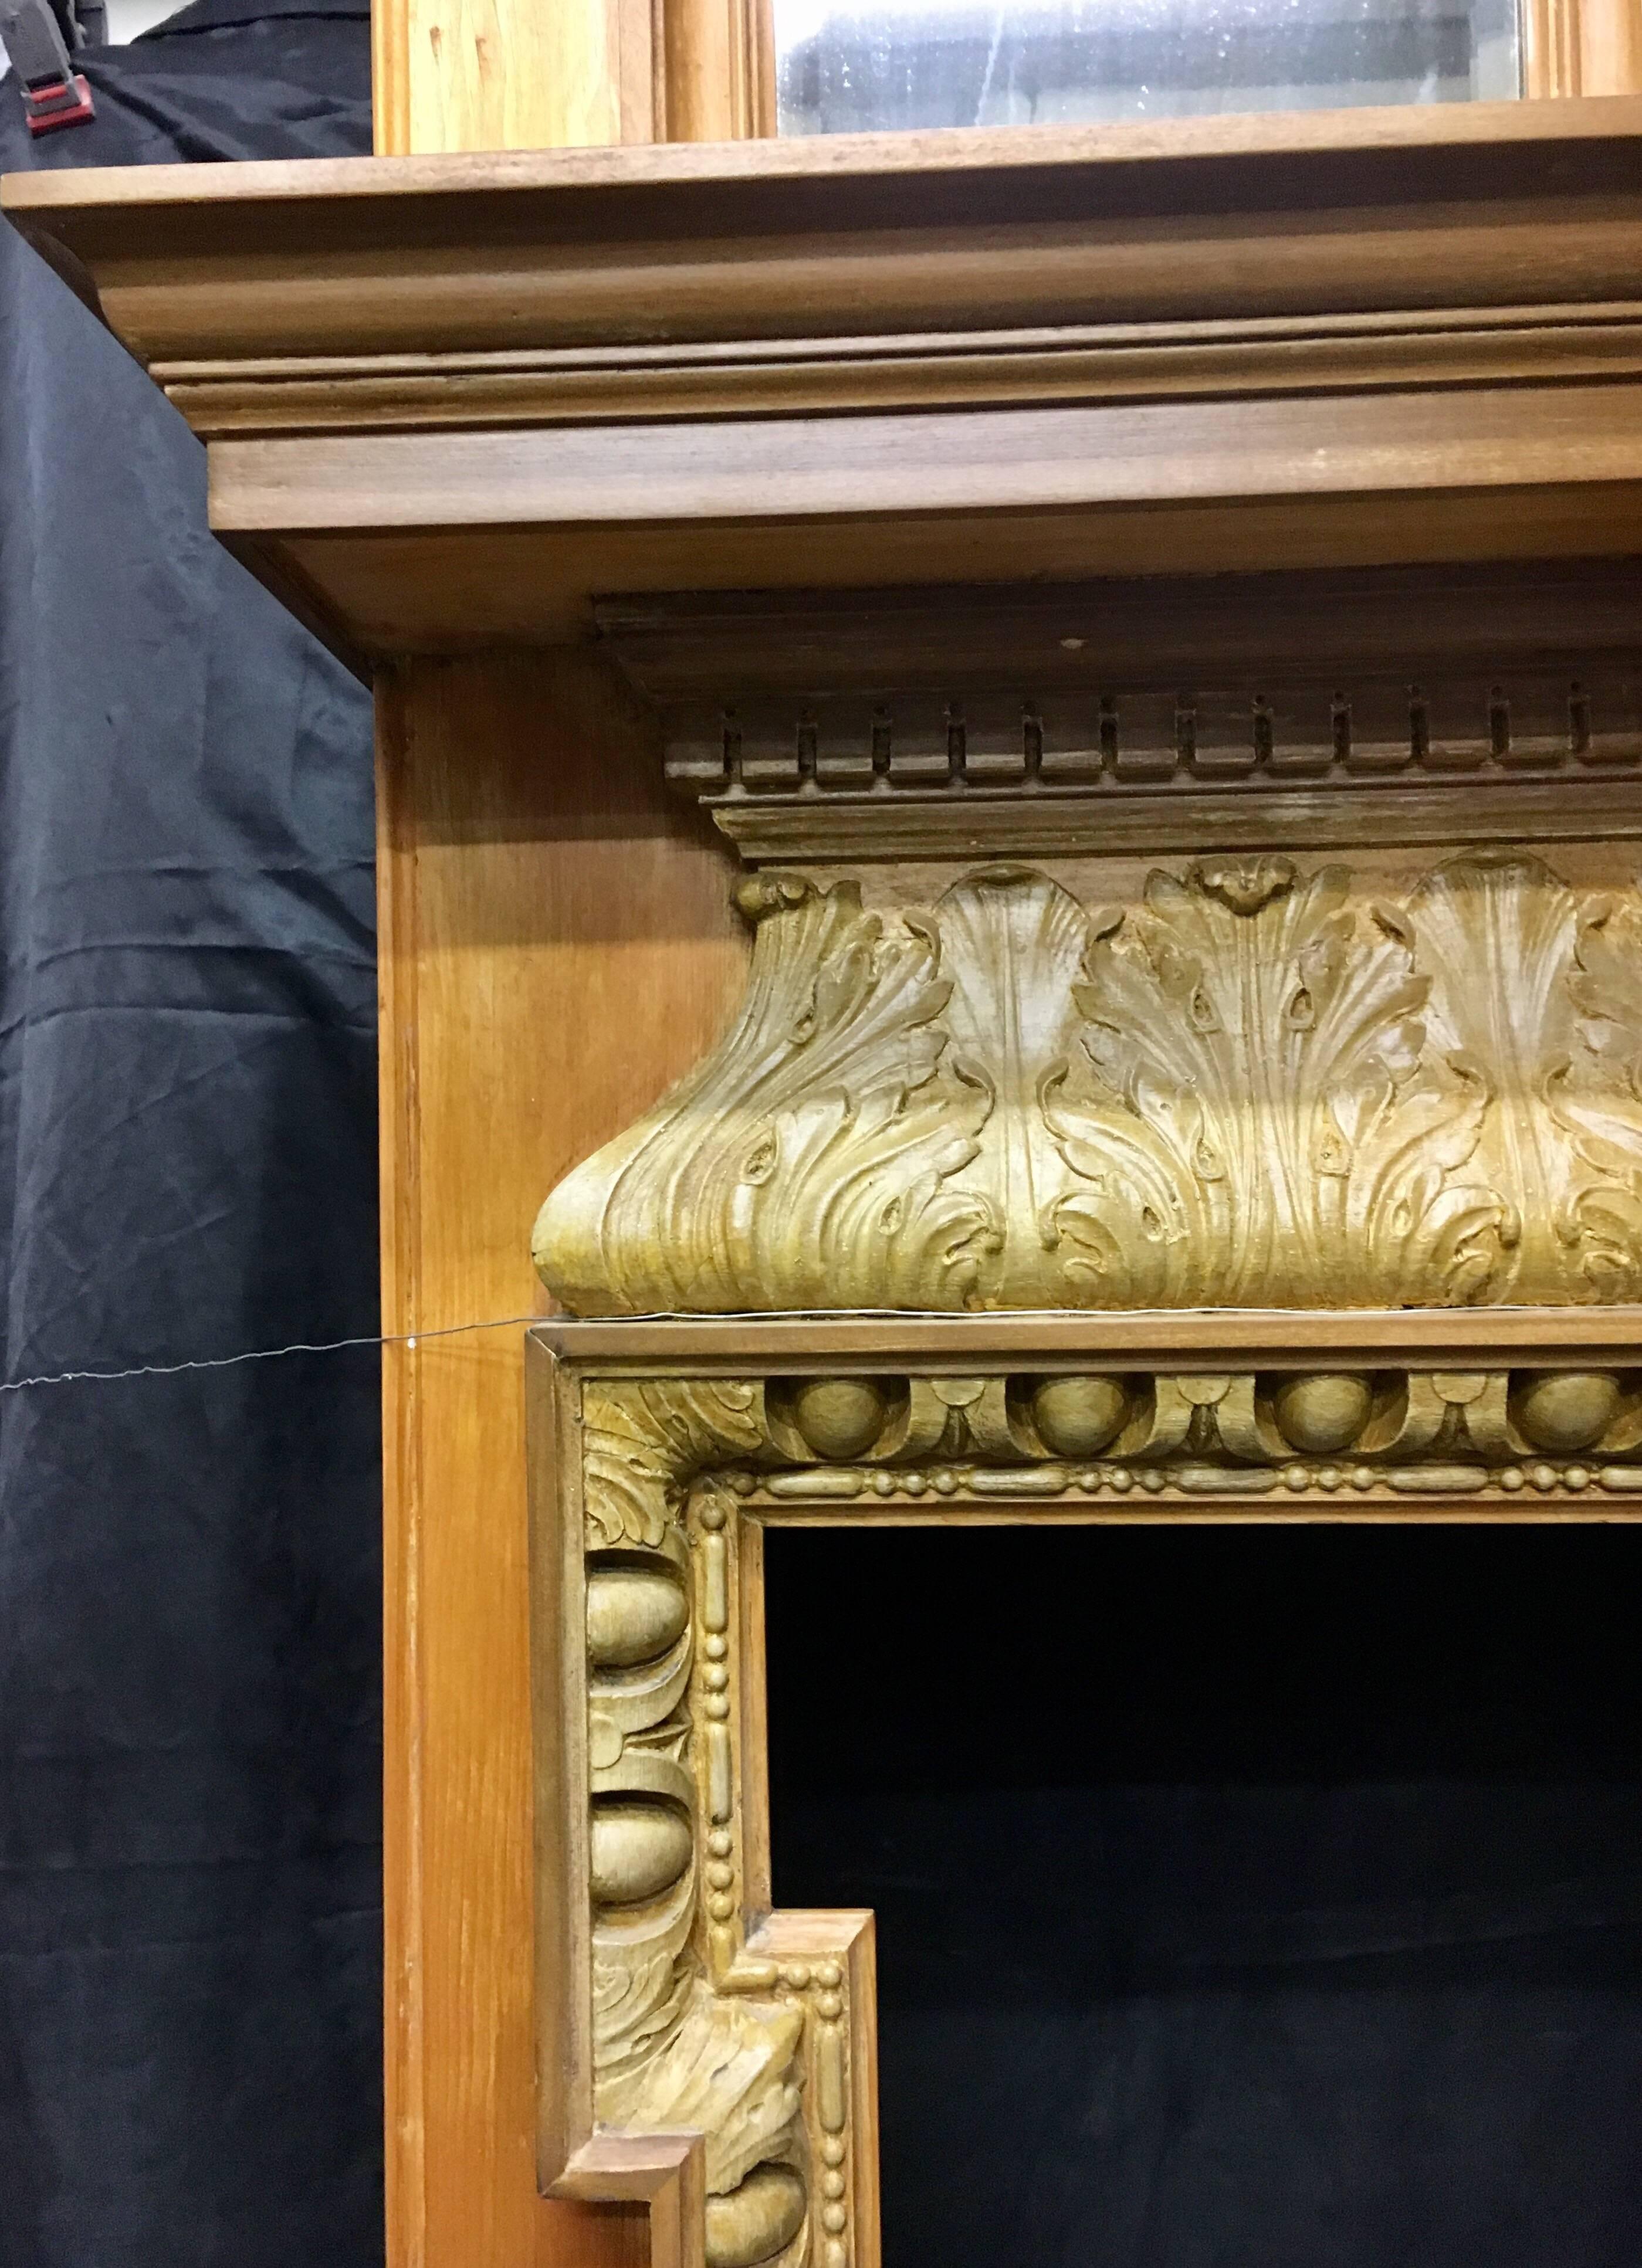 Un grand et beau cadre de cheminée en pin et gesso de la fin du XIXe siècle, avec son miroir d'origine au-dessus de la cheminée. Le triple miroir biseauté se trouve dans des cadres séparés présentant un décor de feuilles d'acanthe le long de la